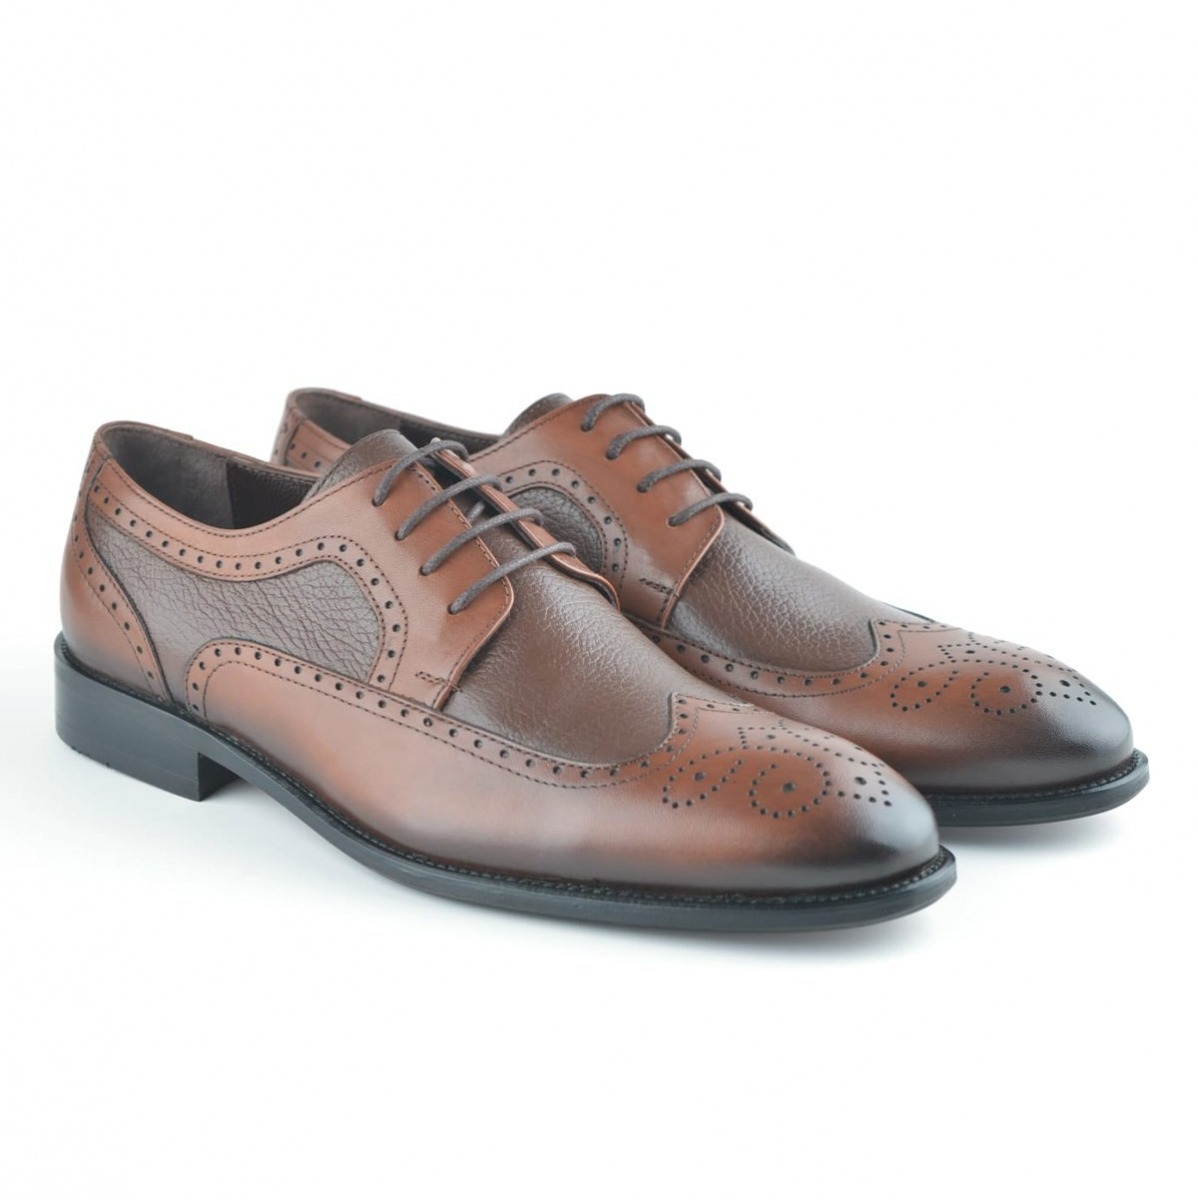 Flo Erkek Deri Klasik Ayakkabı İ20S-191180-4 M 1000 TABA. 4